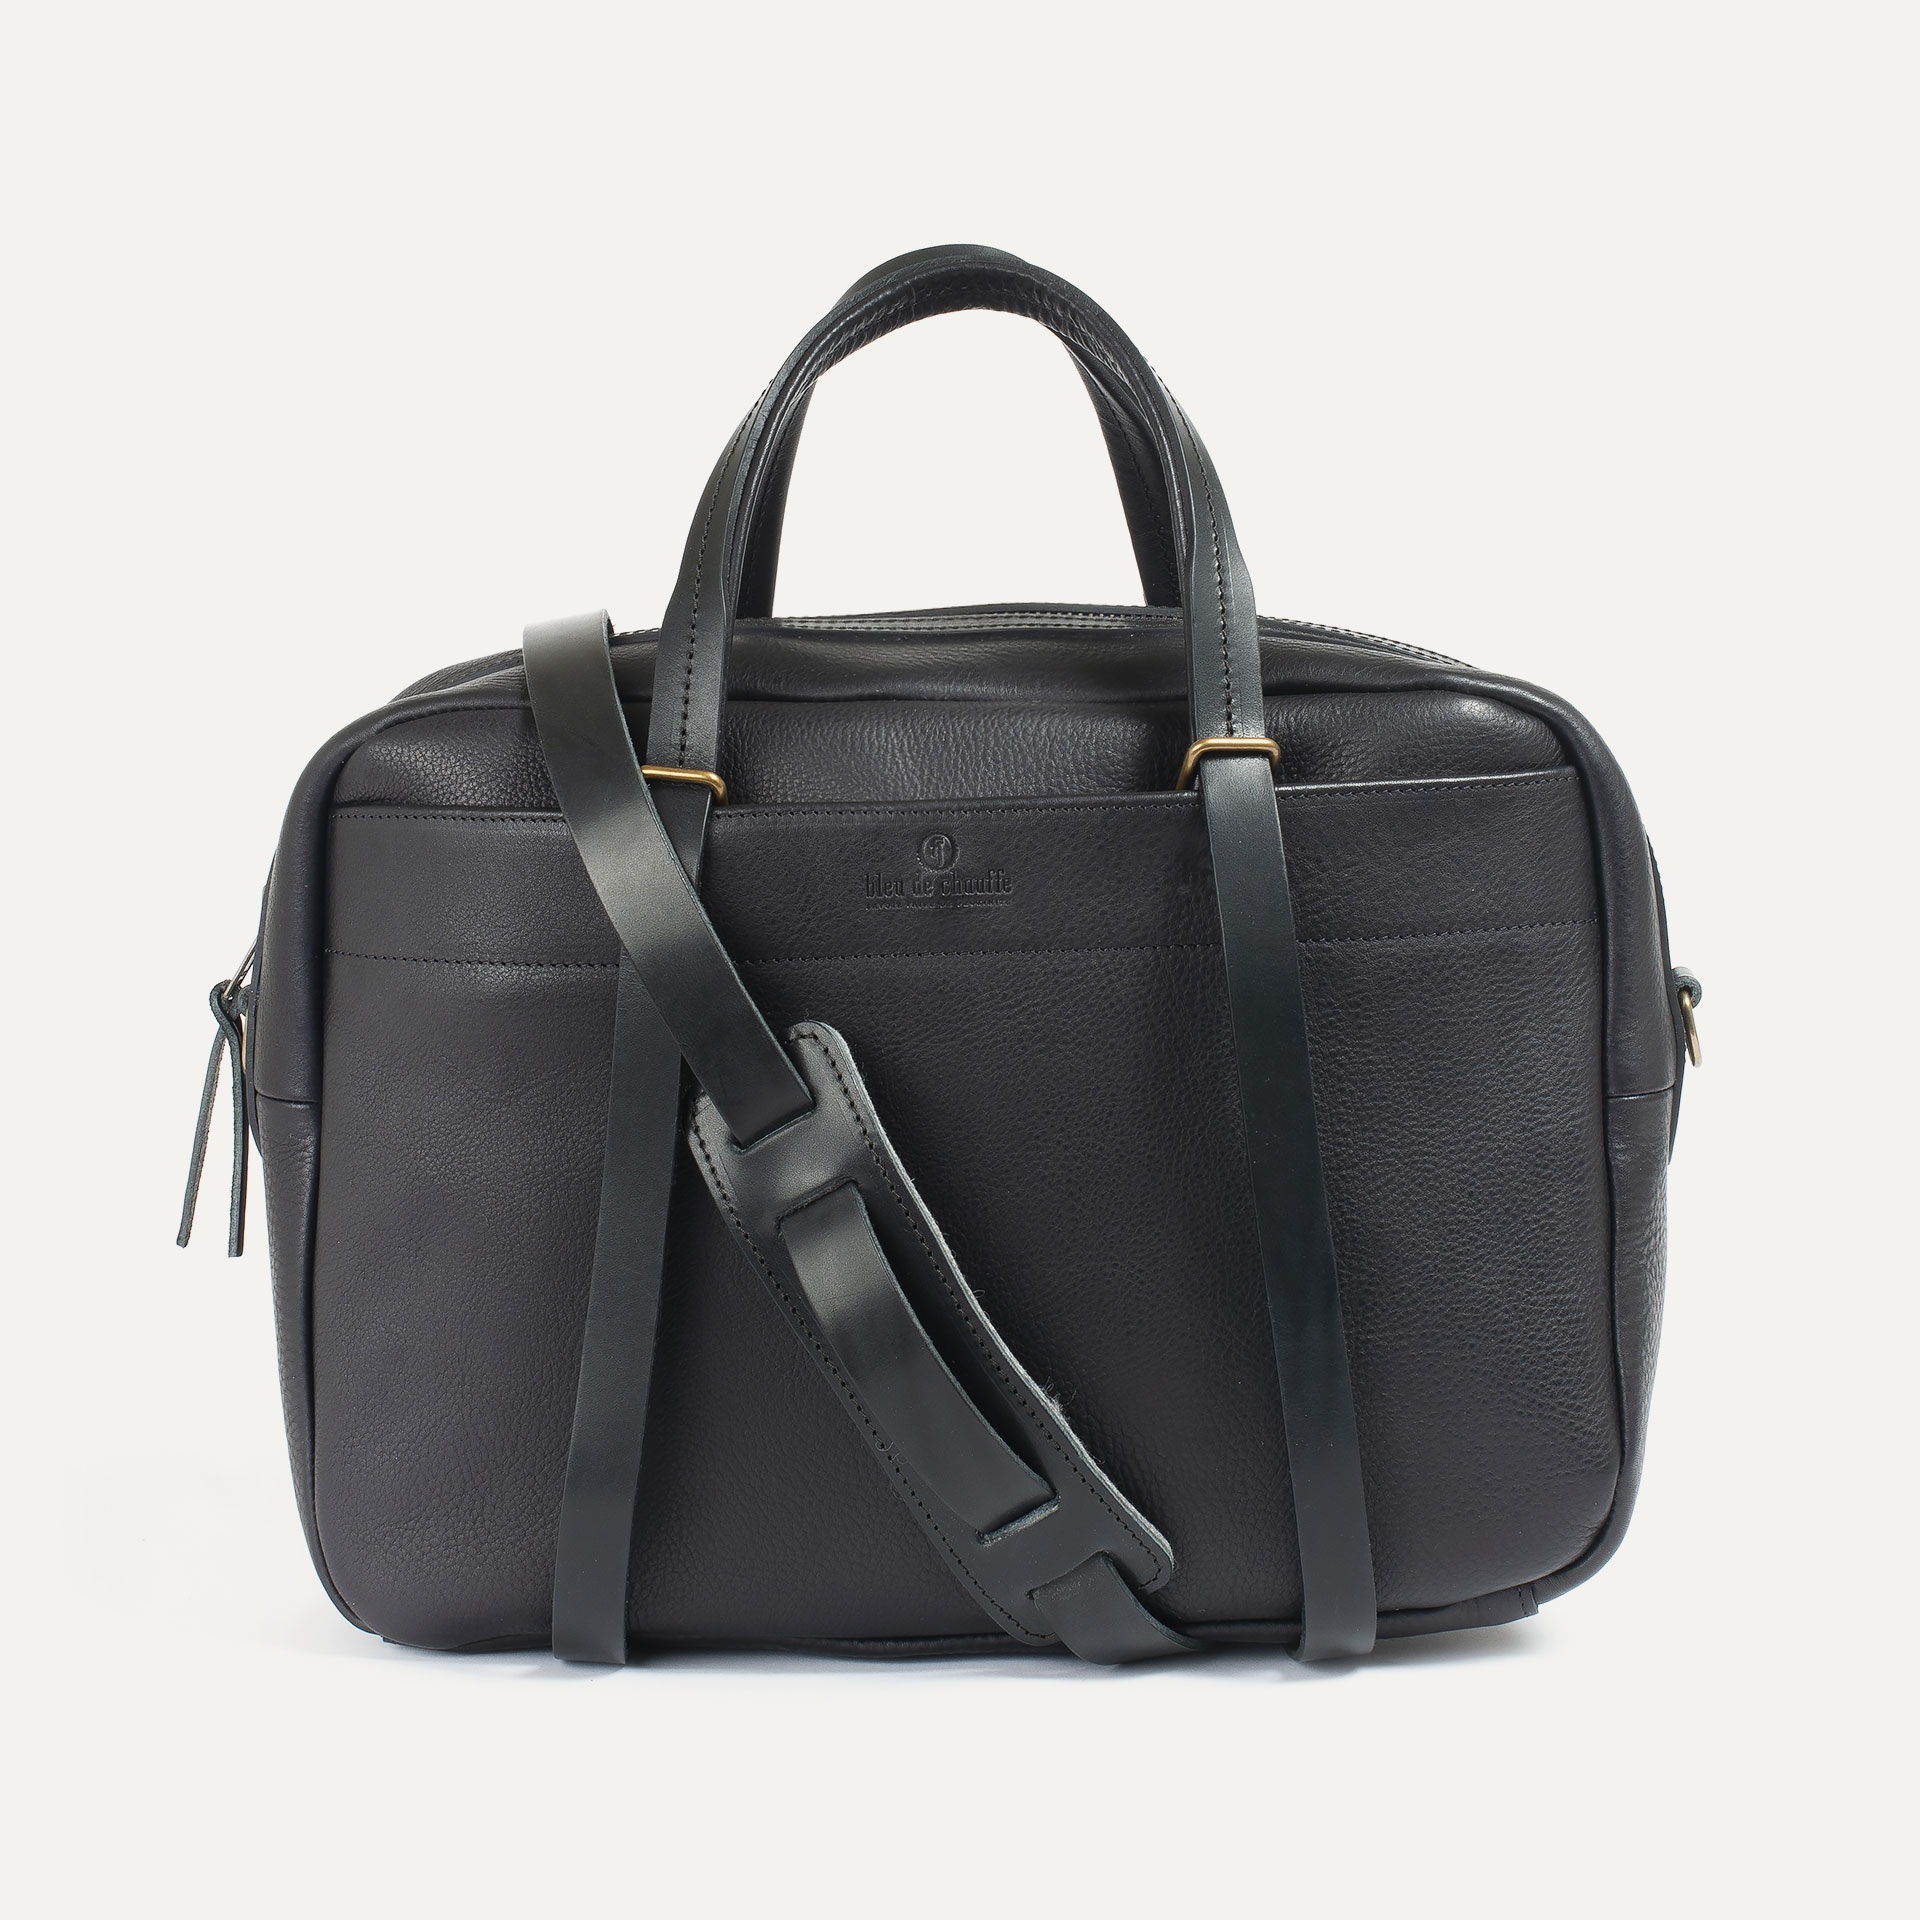 Report Business bag - Black -Men's Leather bag - Leather Laptop bag for ...